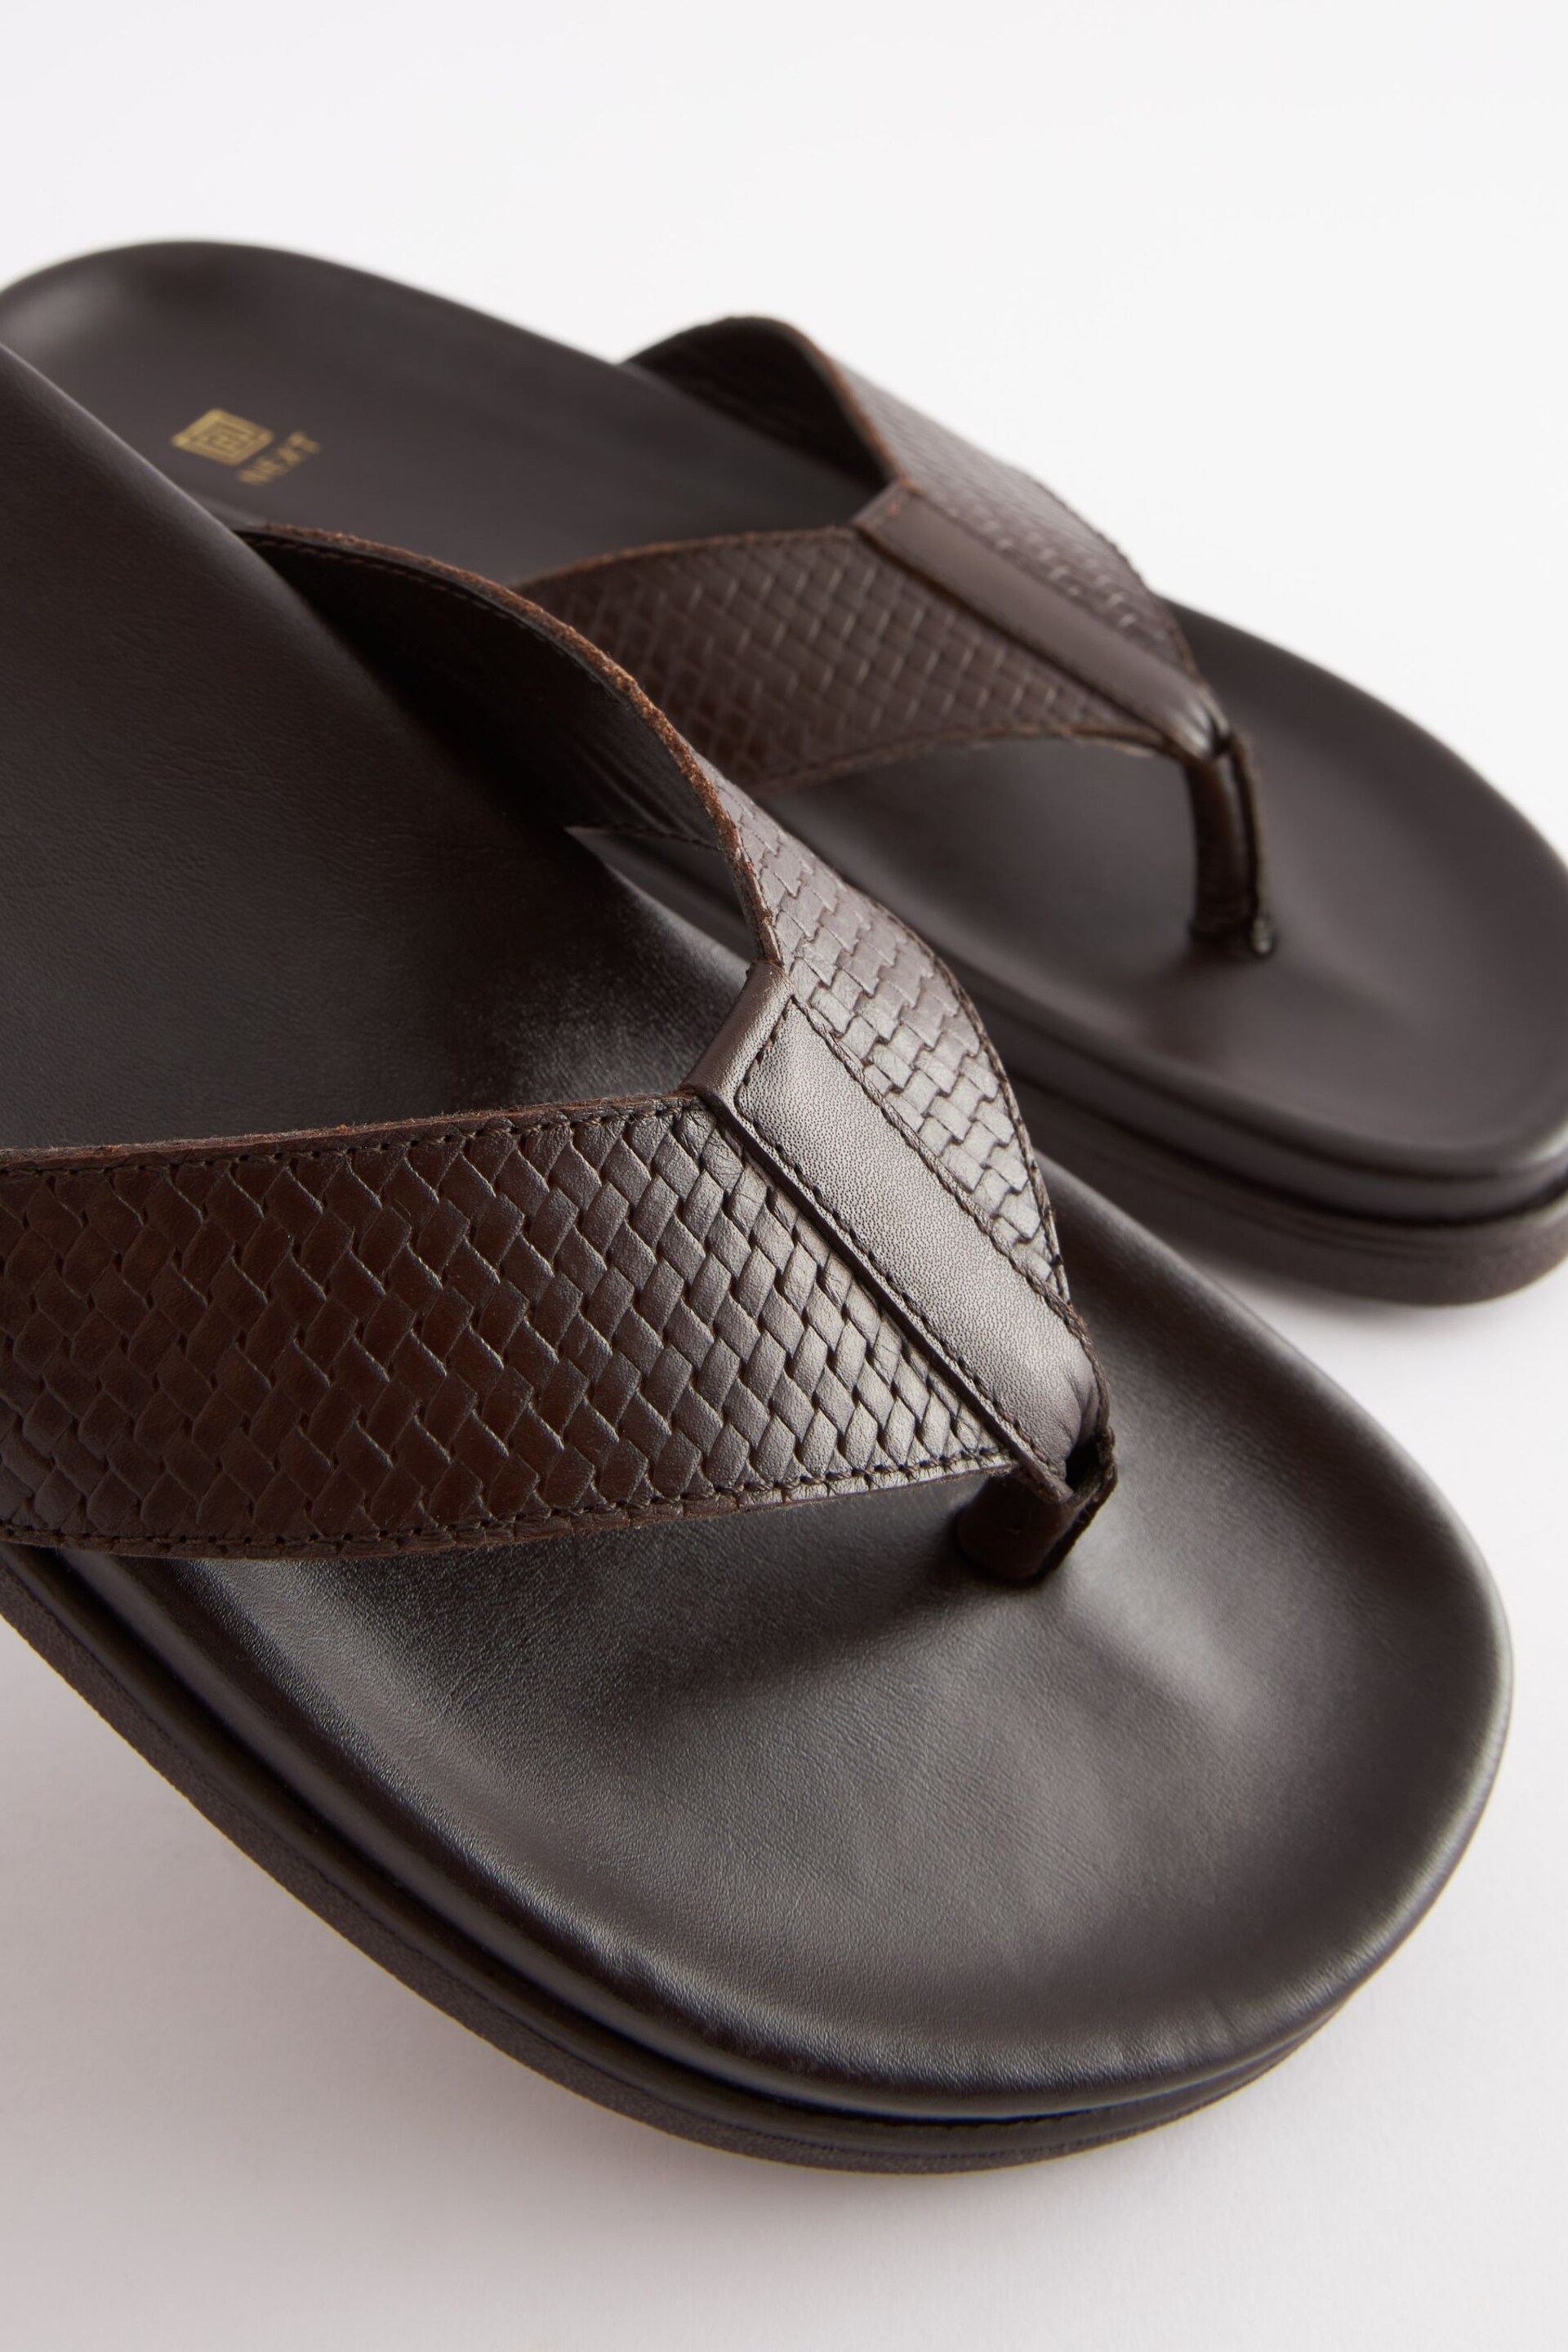 Brown Embossed Leather Flip Flops - Image 4 of 7